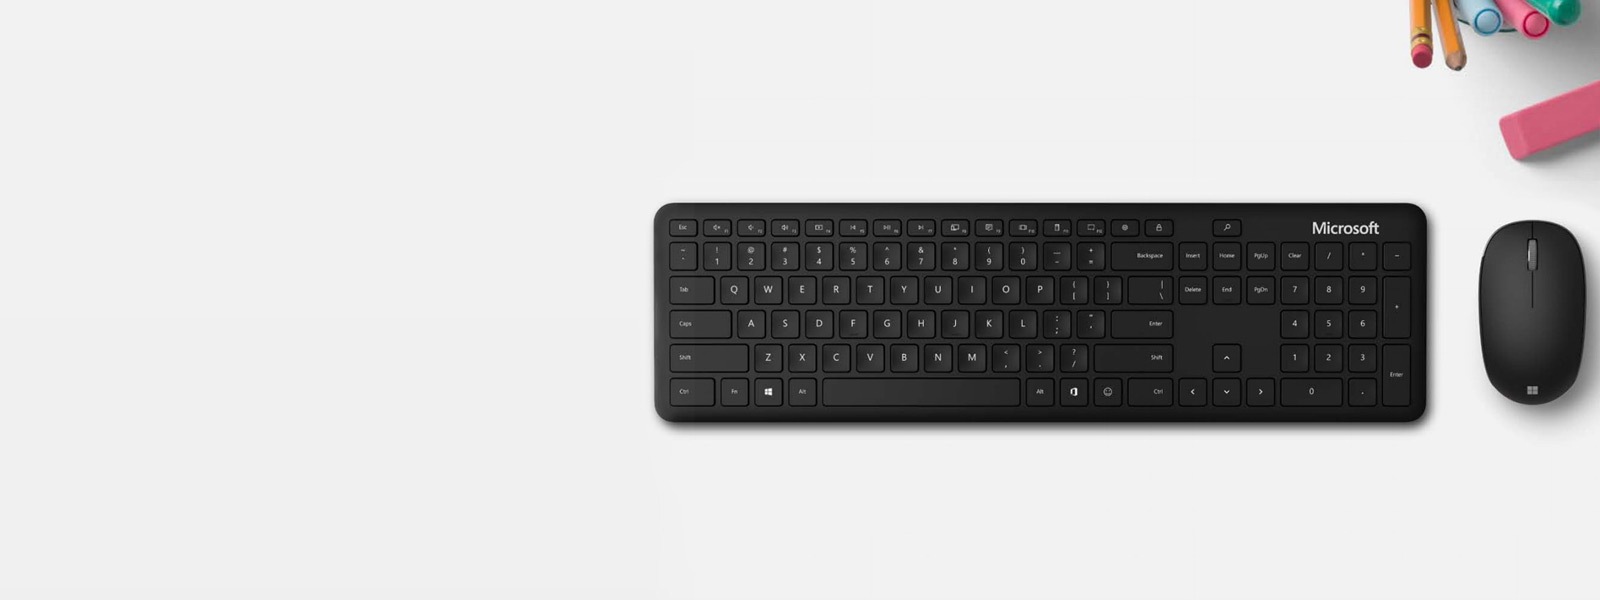 Πληκτρολόγιο Microsoft Bluetooth Keyboard δίπλα σε ένα ποντίκι Microsoft Bluetooth Mouse πάνω σε ένα γραφείο μαζί με μολύβι, μαρκαδόρο και γόμα
